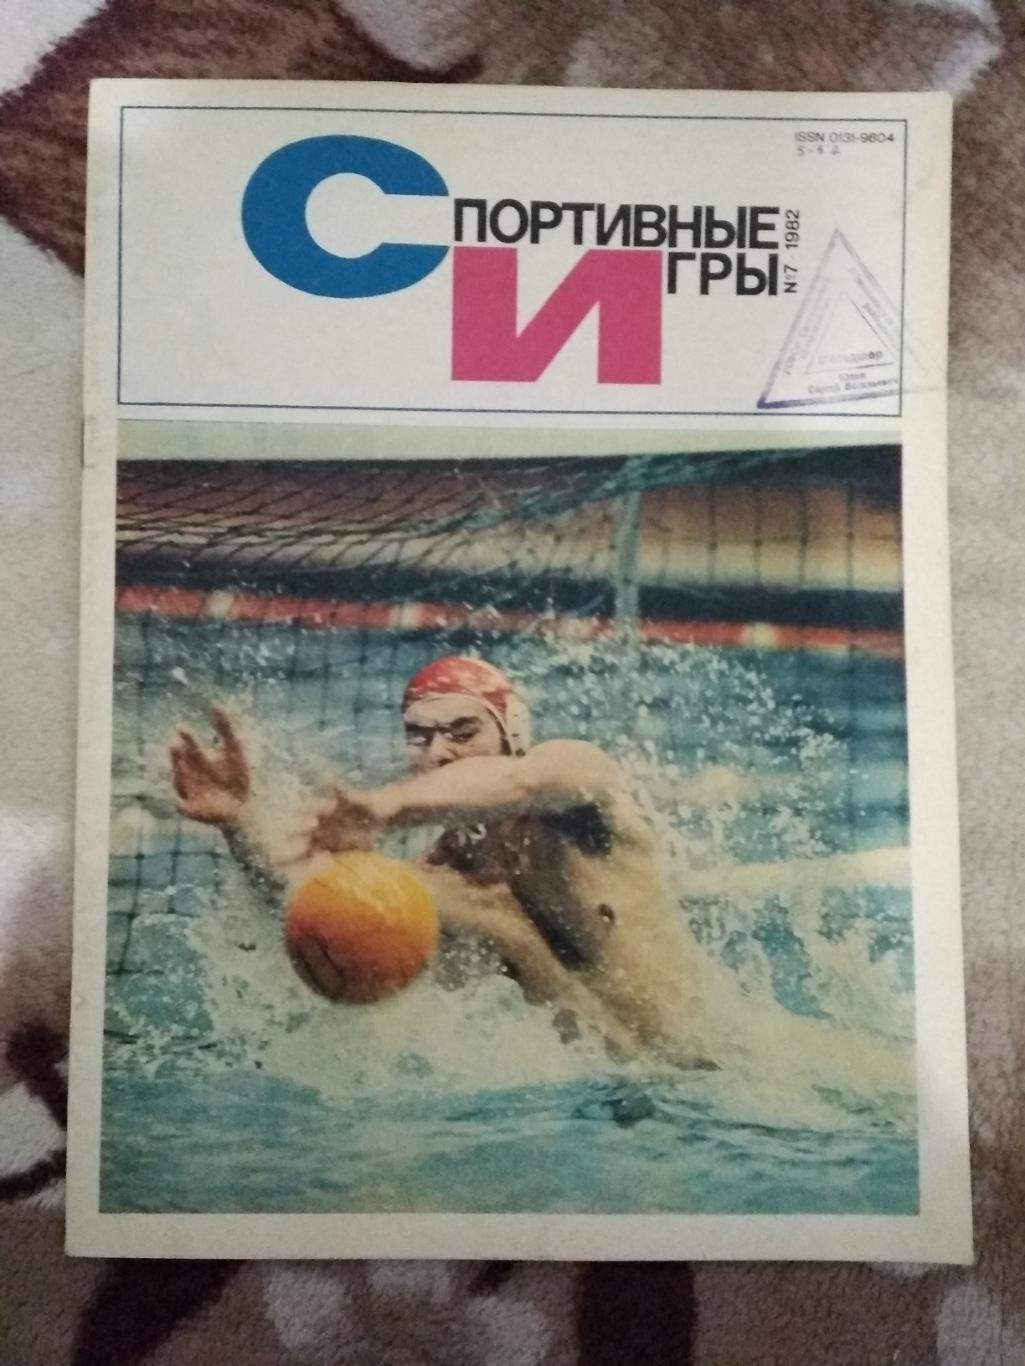 Журнал.Спортивные игры № 7 1982 г.